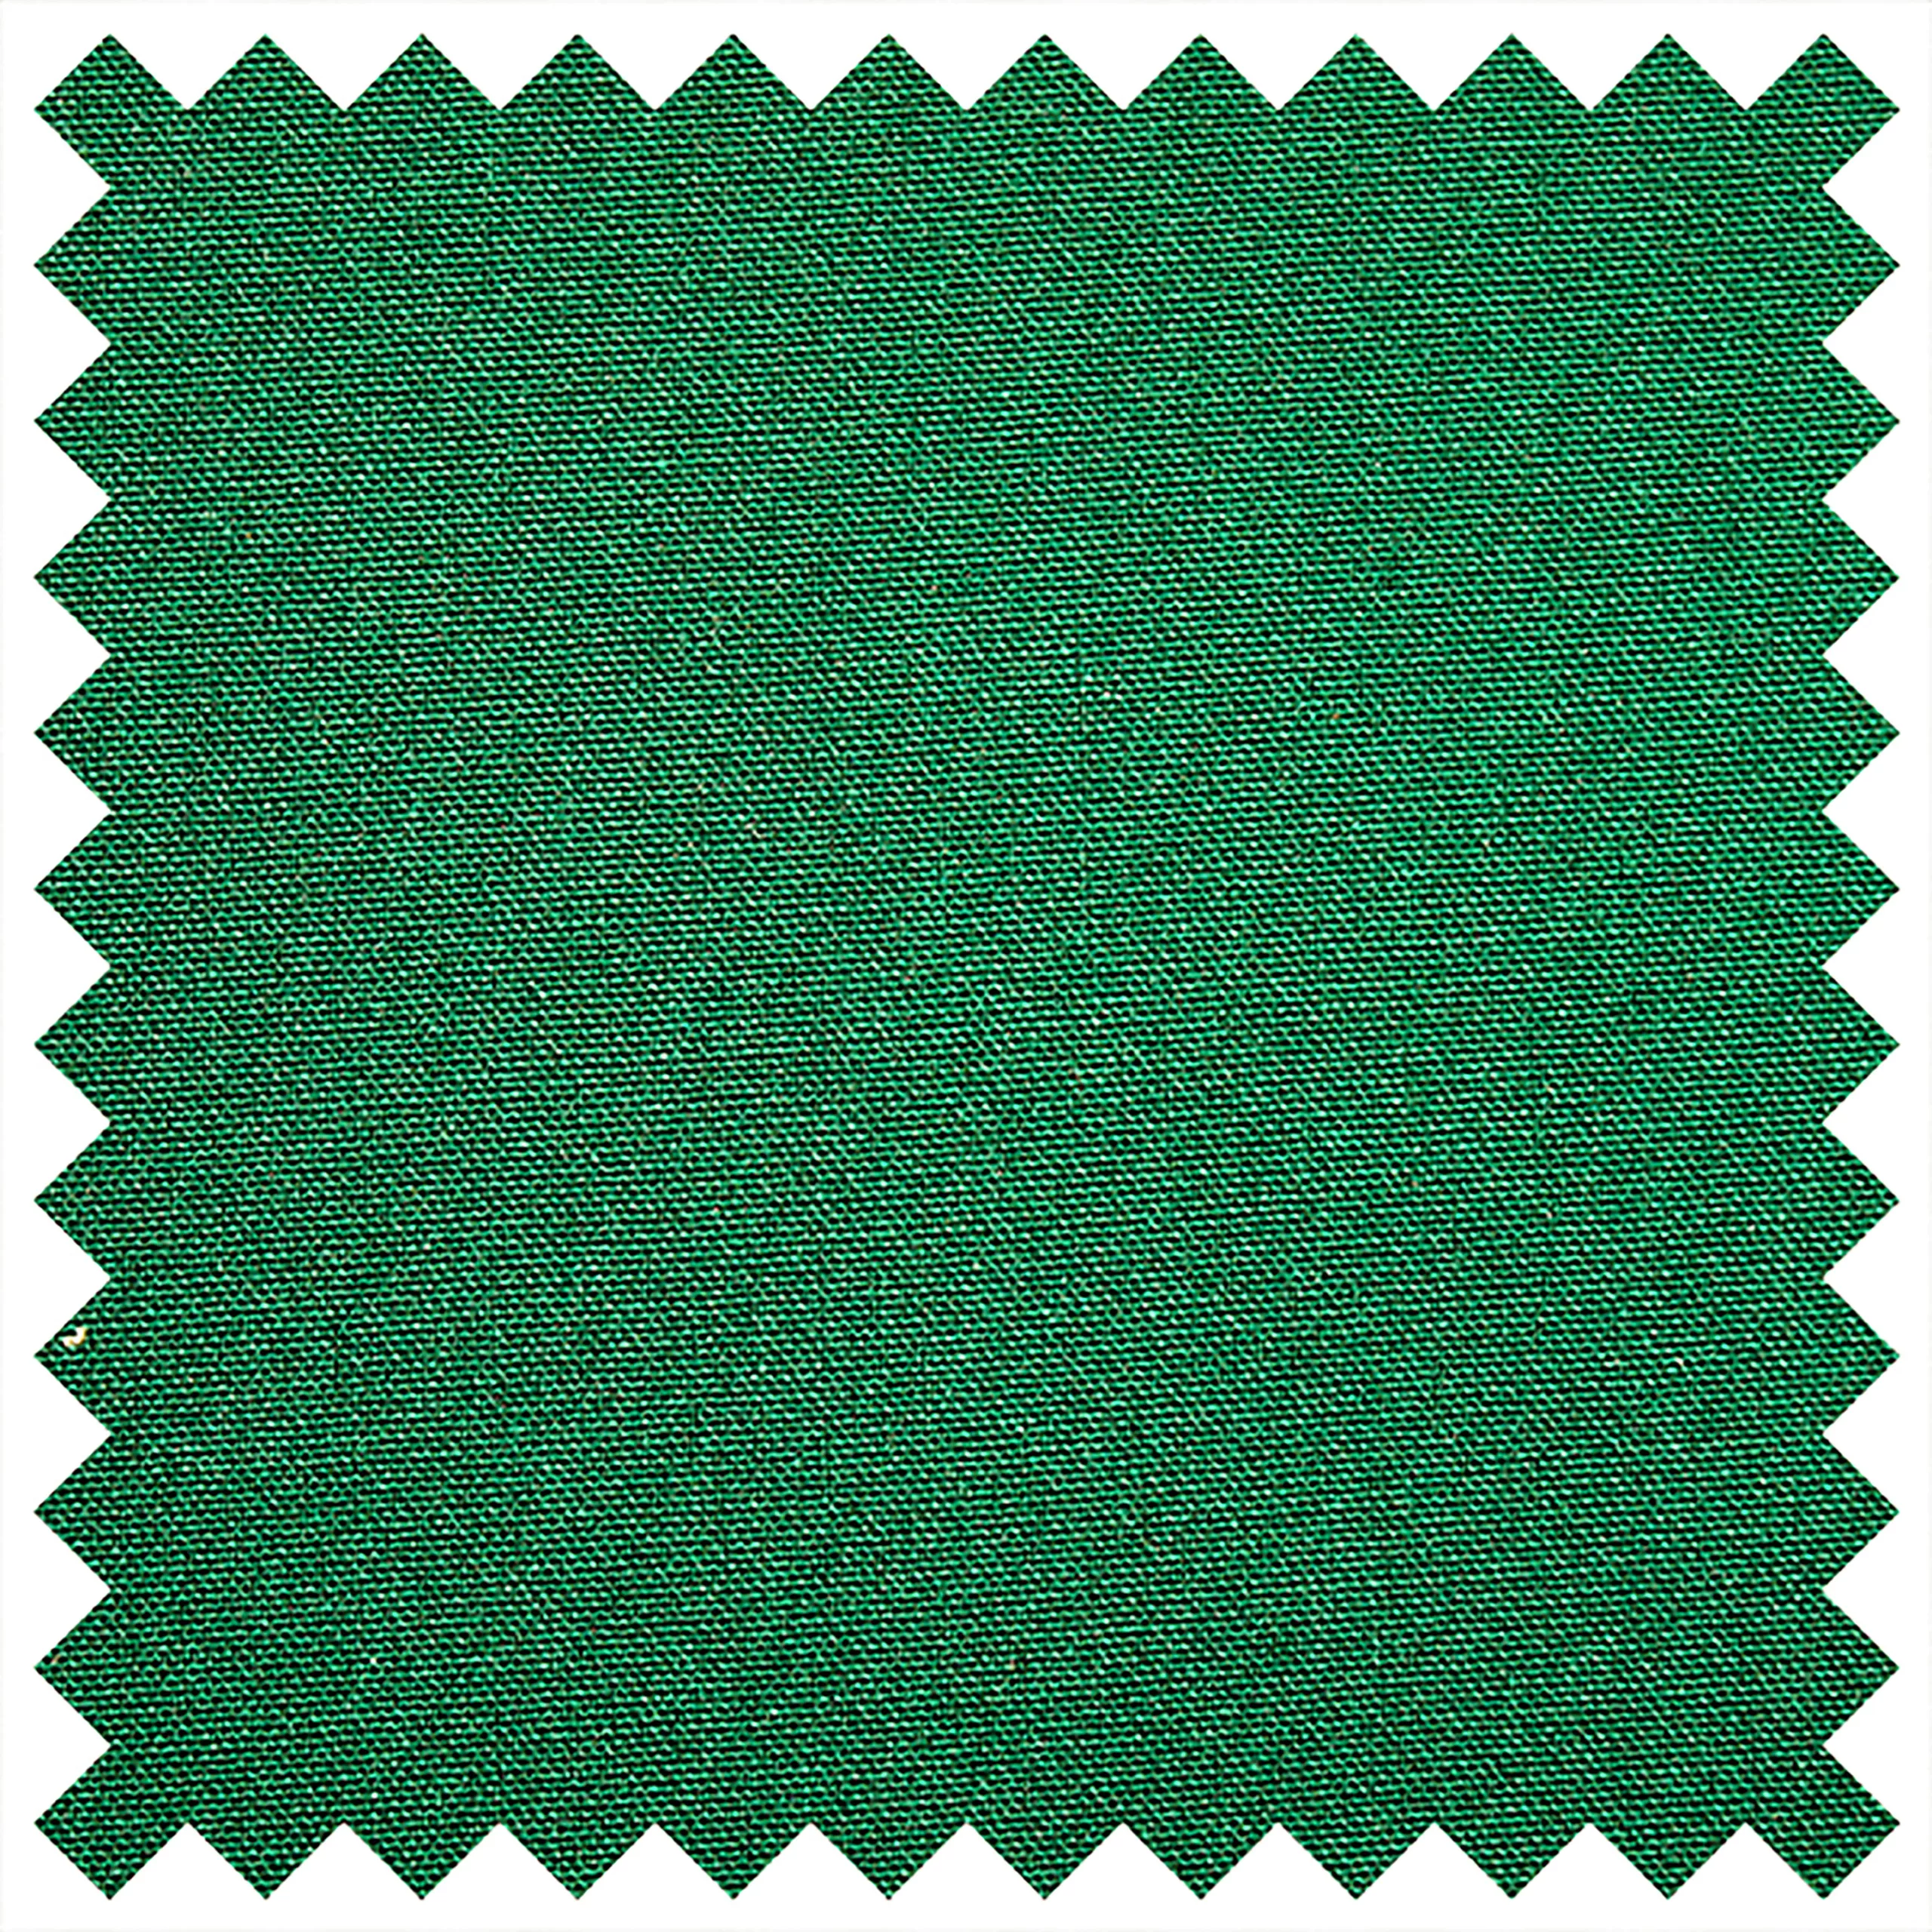 Cotton Emerald Linen - PEAK Event Services